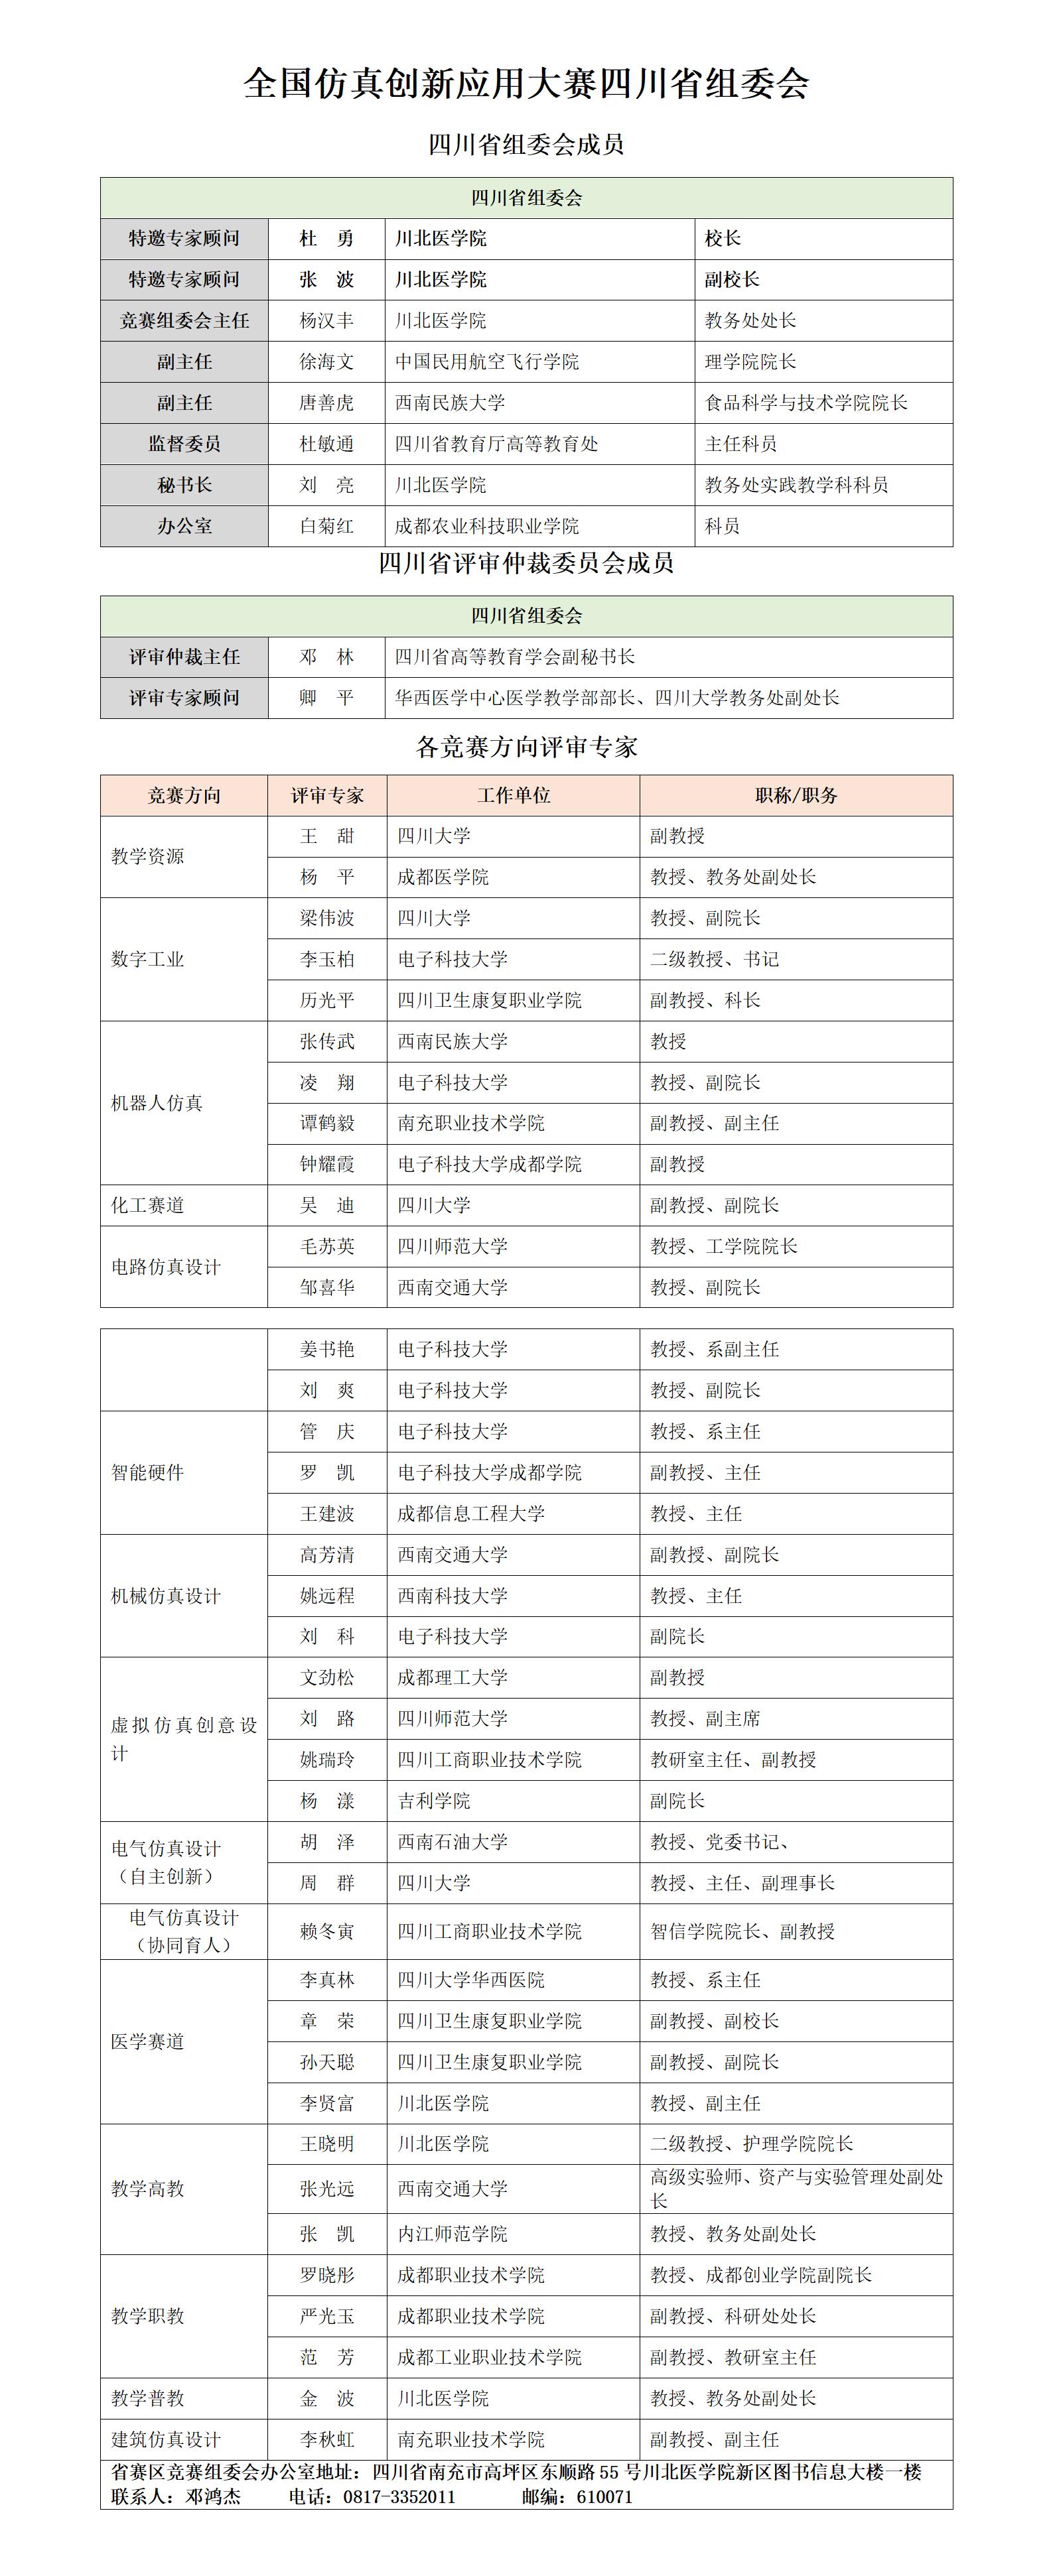 四川省赛区组委会及专家名录对外公布版_01.jpg